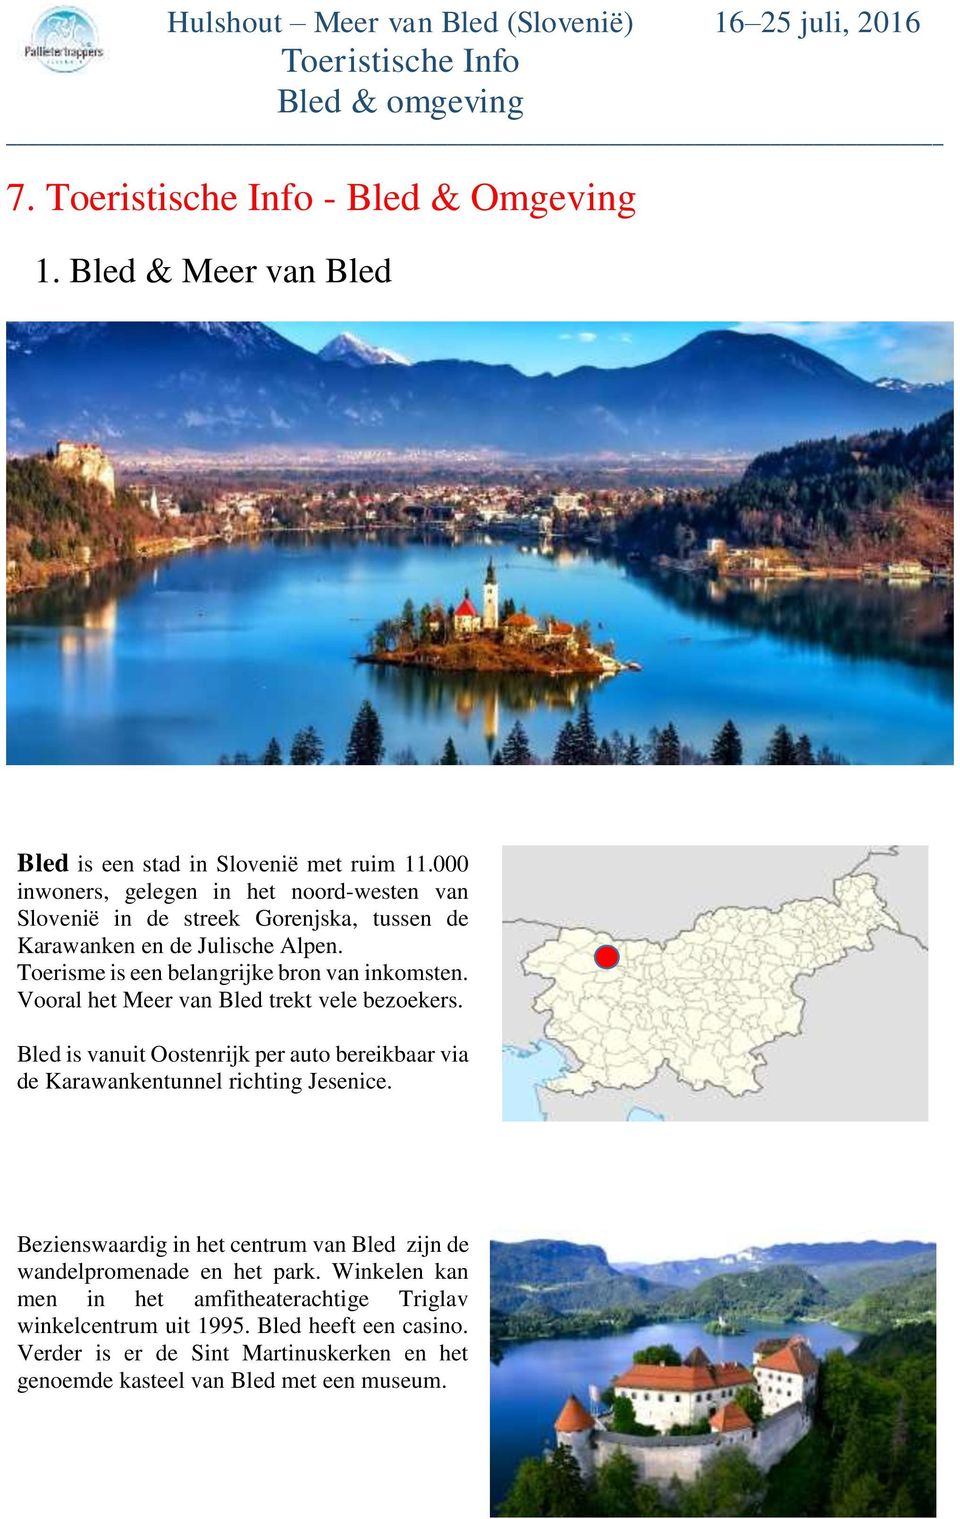 Toerisme is een belangrijke bron van inkomsten. Vooral het Meer van Bled trekt vele bezoekers.